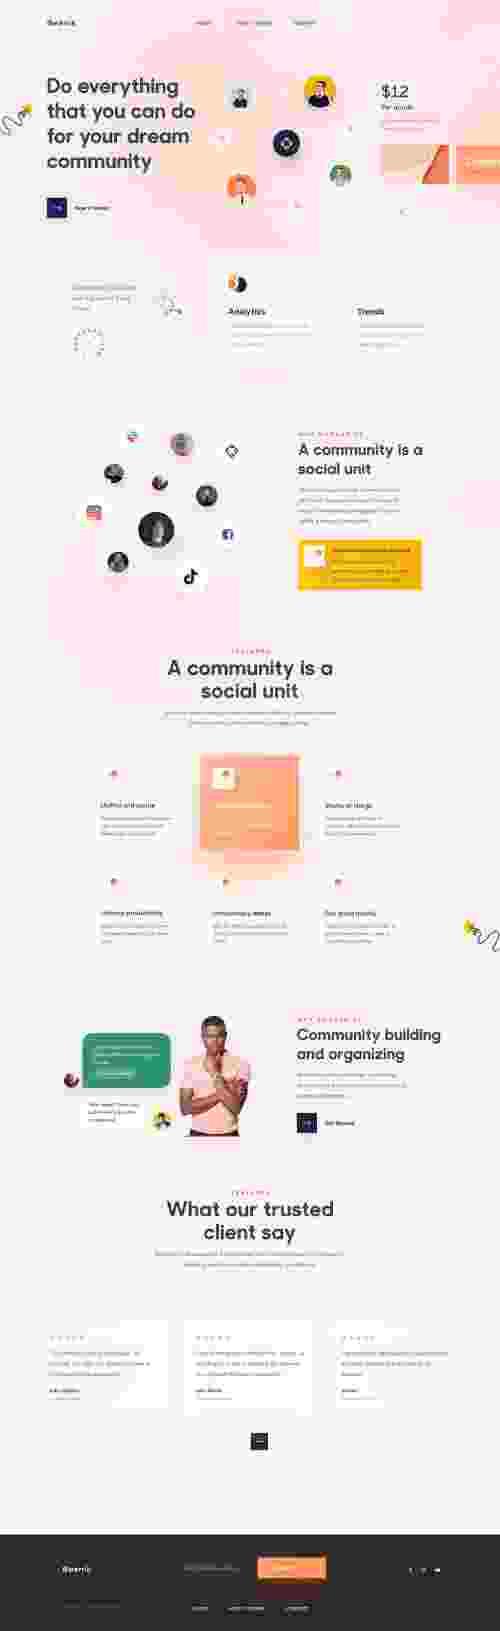 UIHut - Community Conceptual Landing Page - 8670